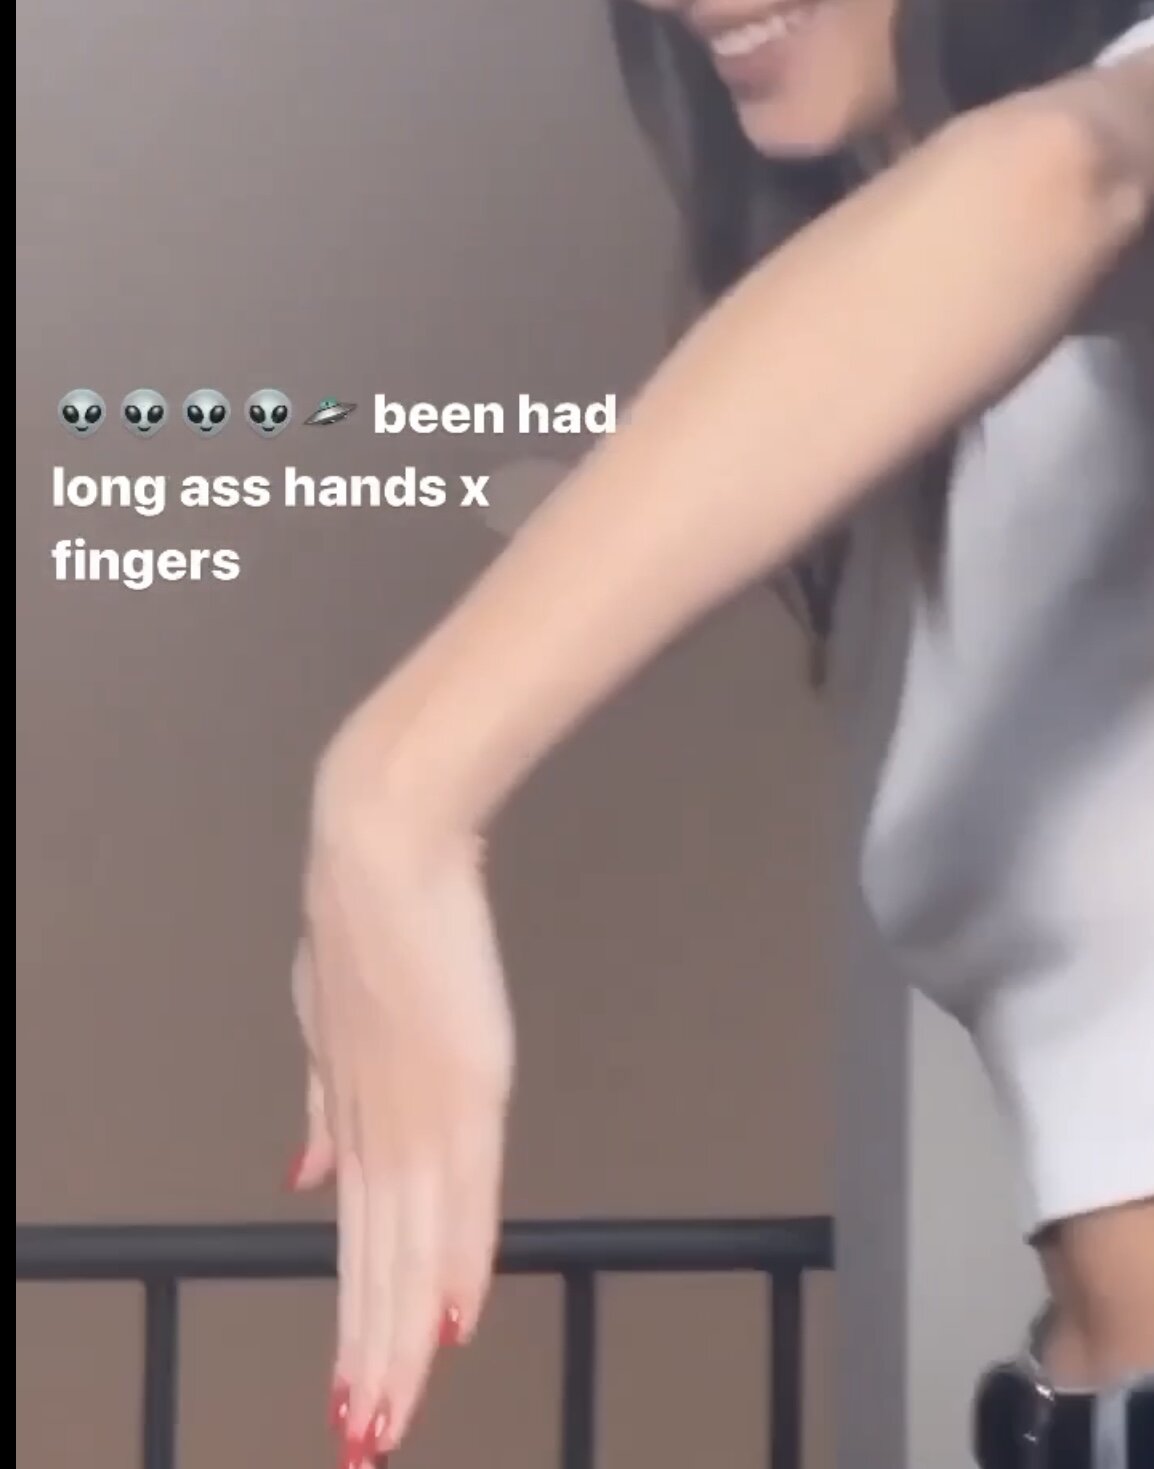 Четыре руки в анус женщины - фото секс и порно riosalon.ru